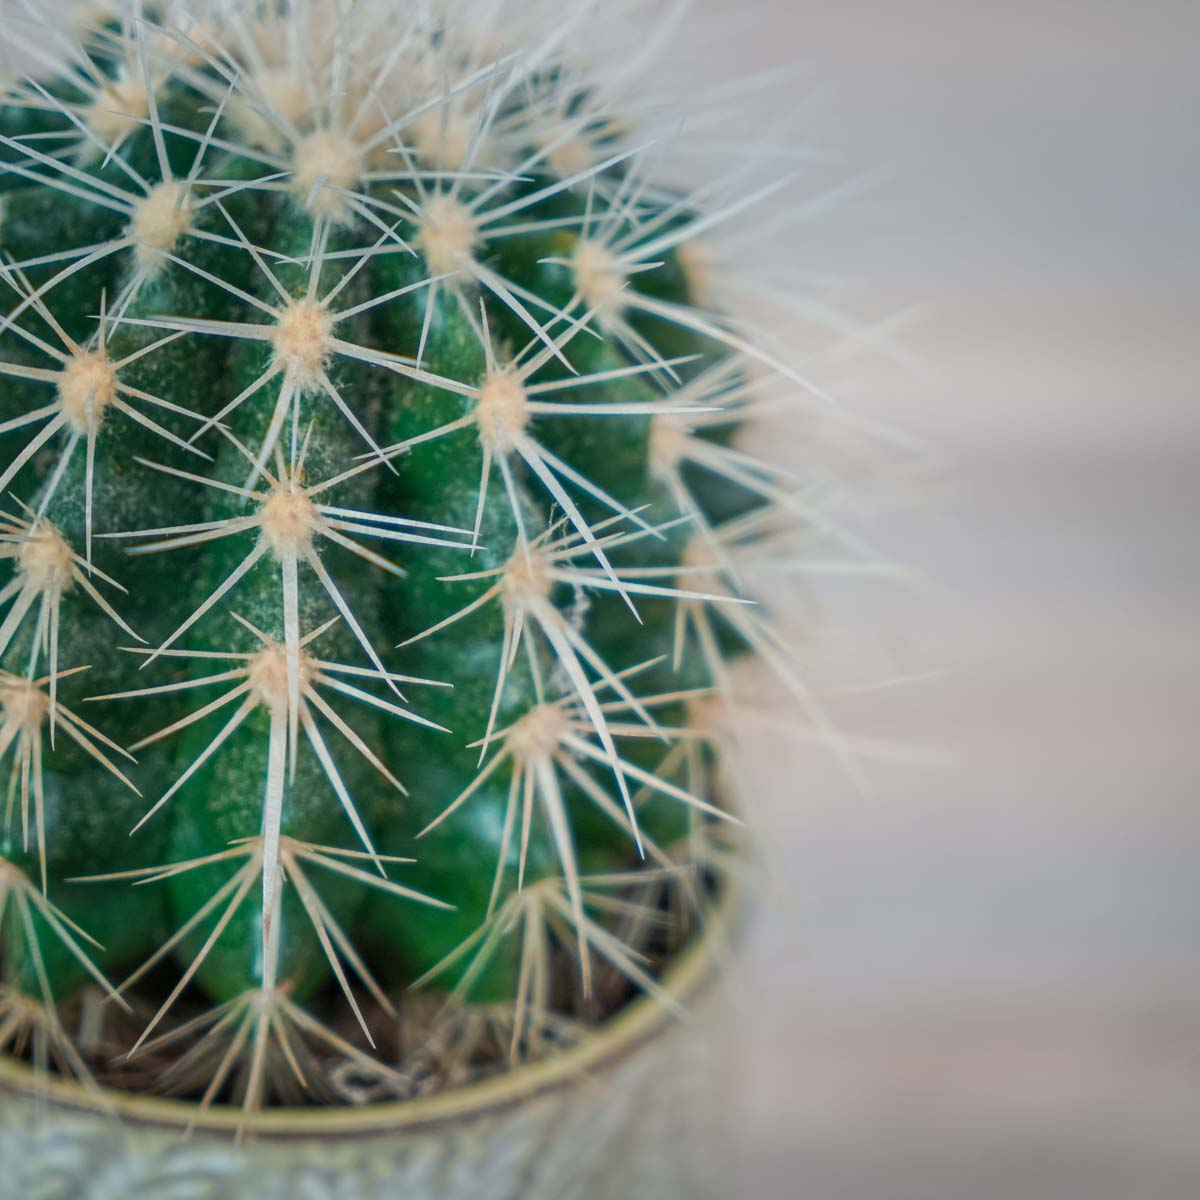 kaktus o okrągłym kształcie z wieloma długimi cierniami.